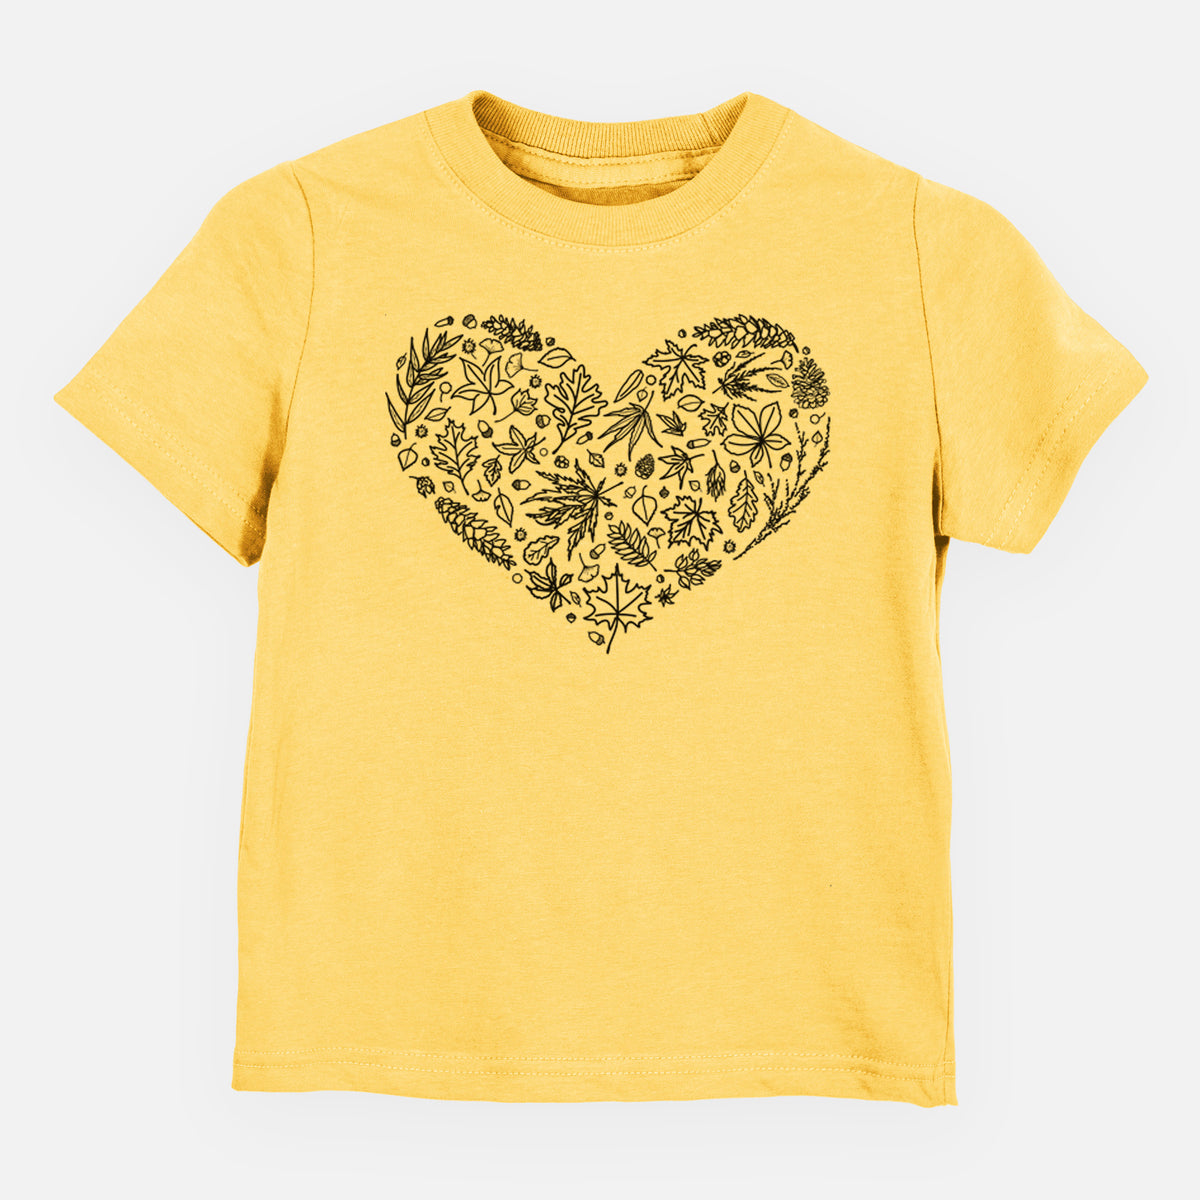 Heart Full of Autumn Leaves - Kids Shirt